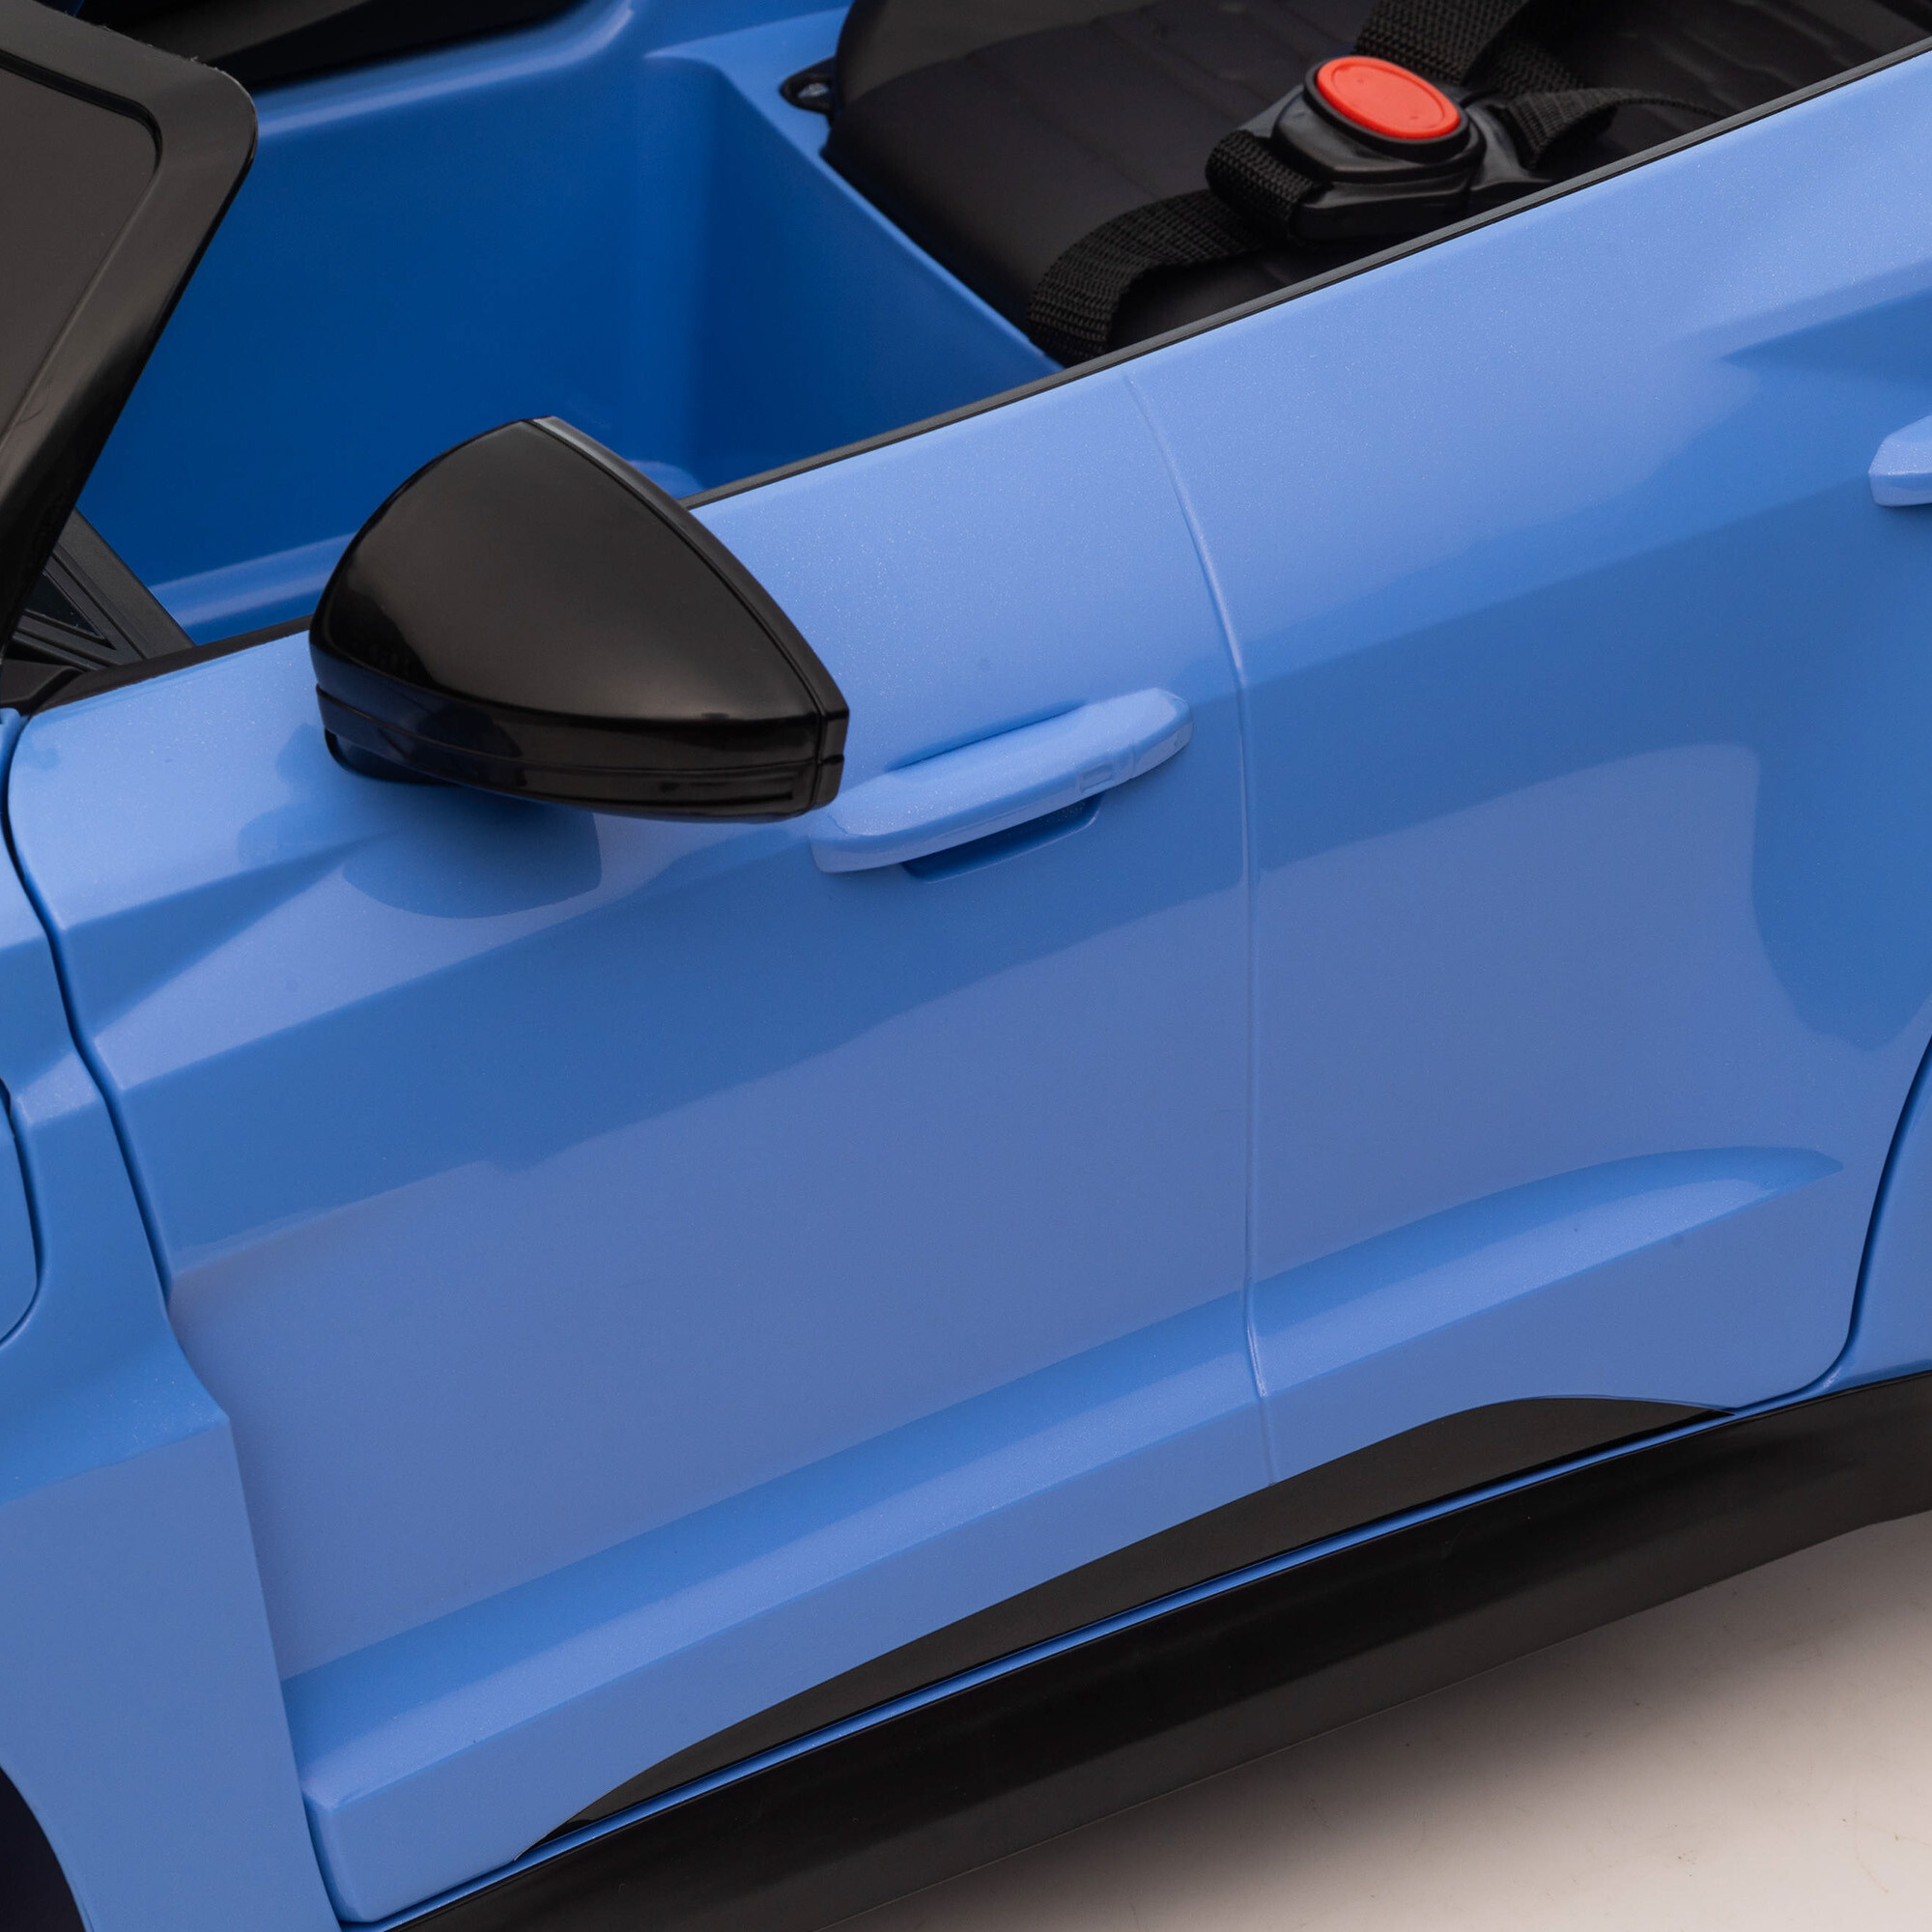 Elbil Audi RS e-tron GT 4 x 12V motorer, EVA hjul, PU lædersæde